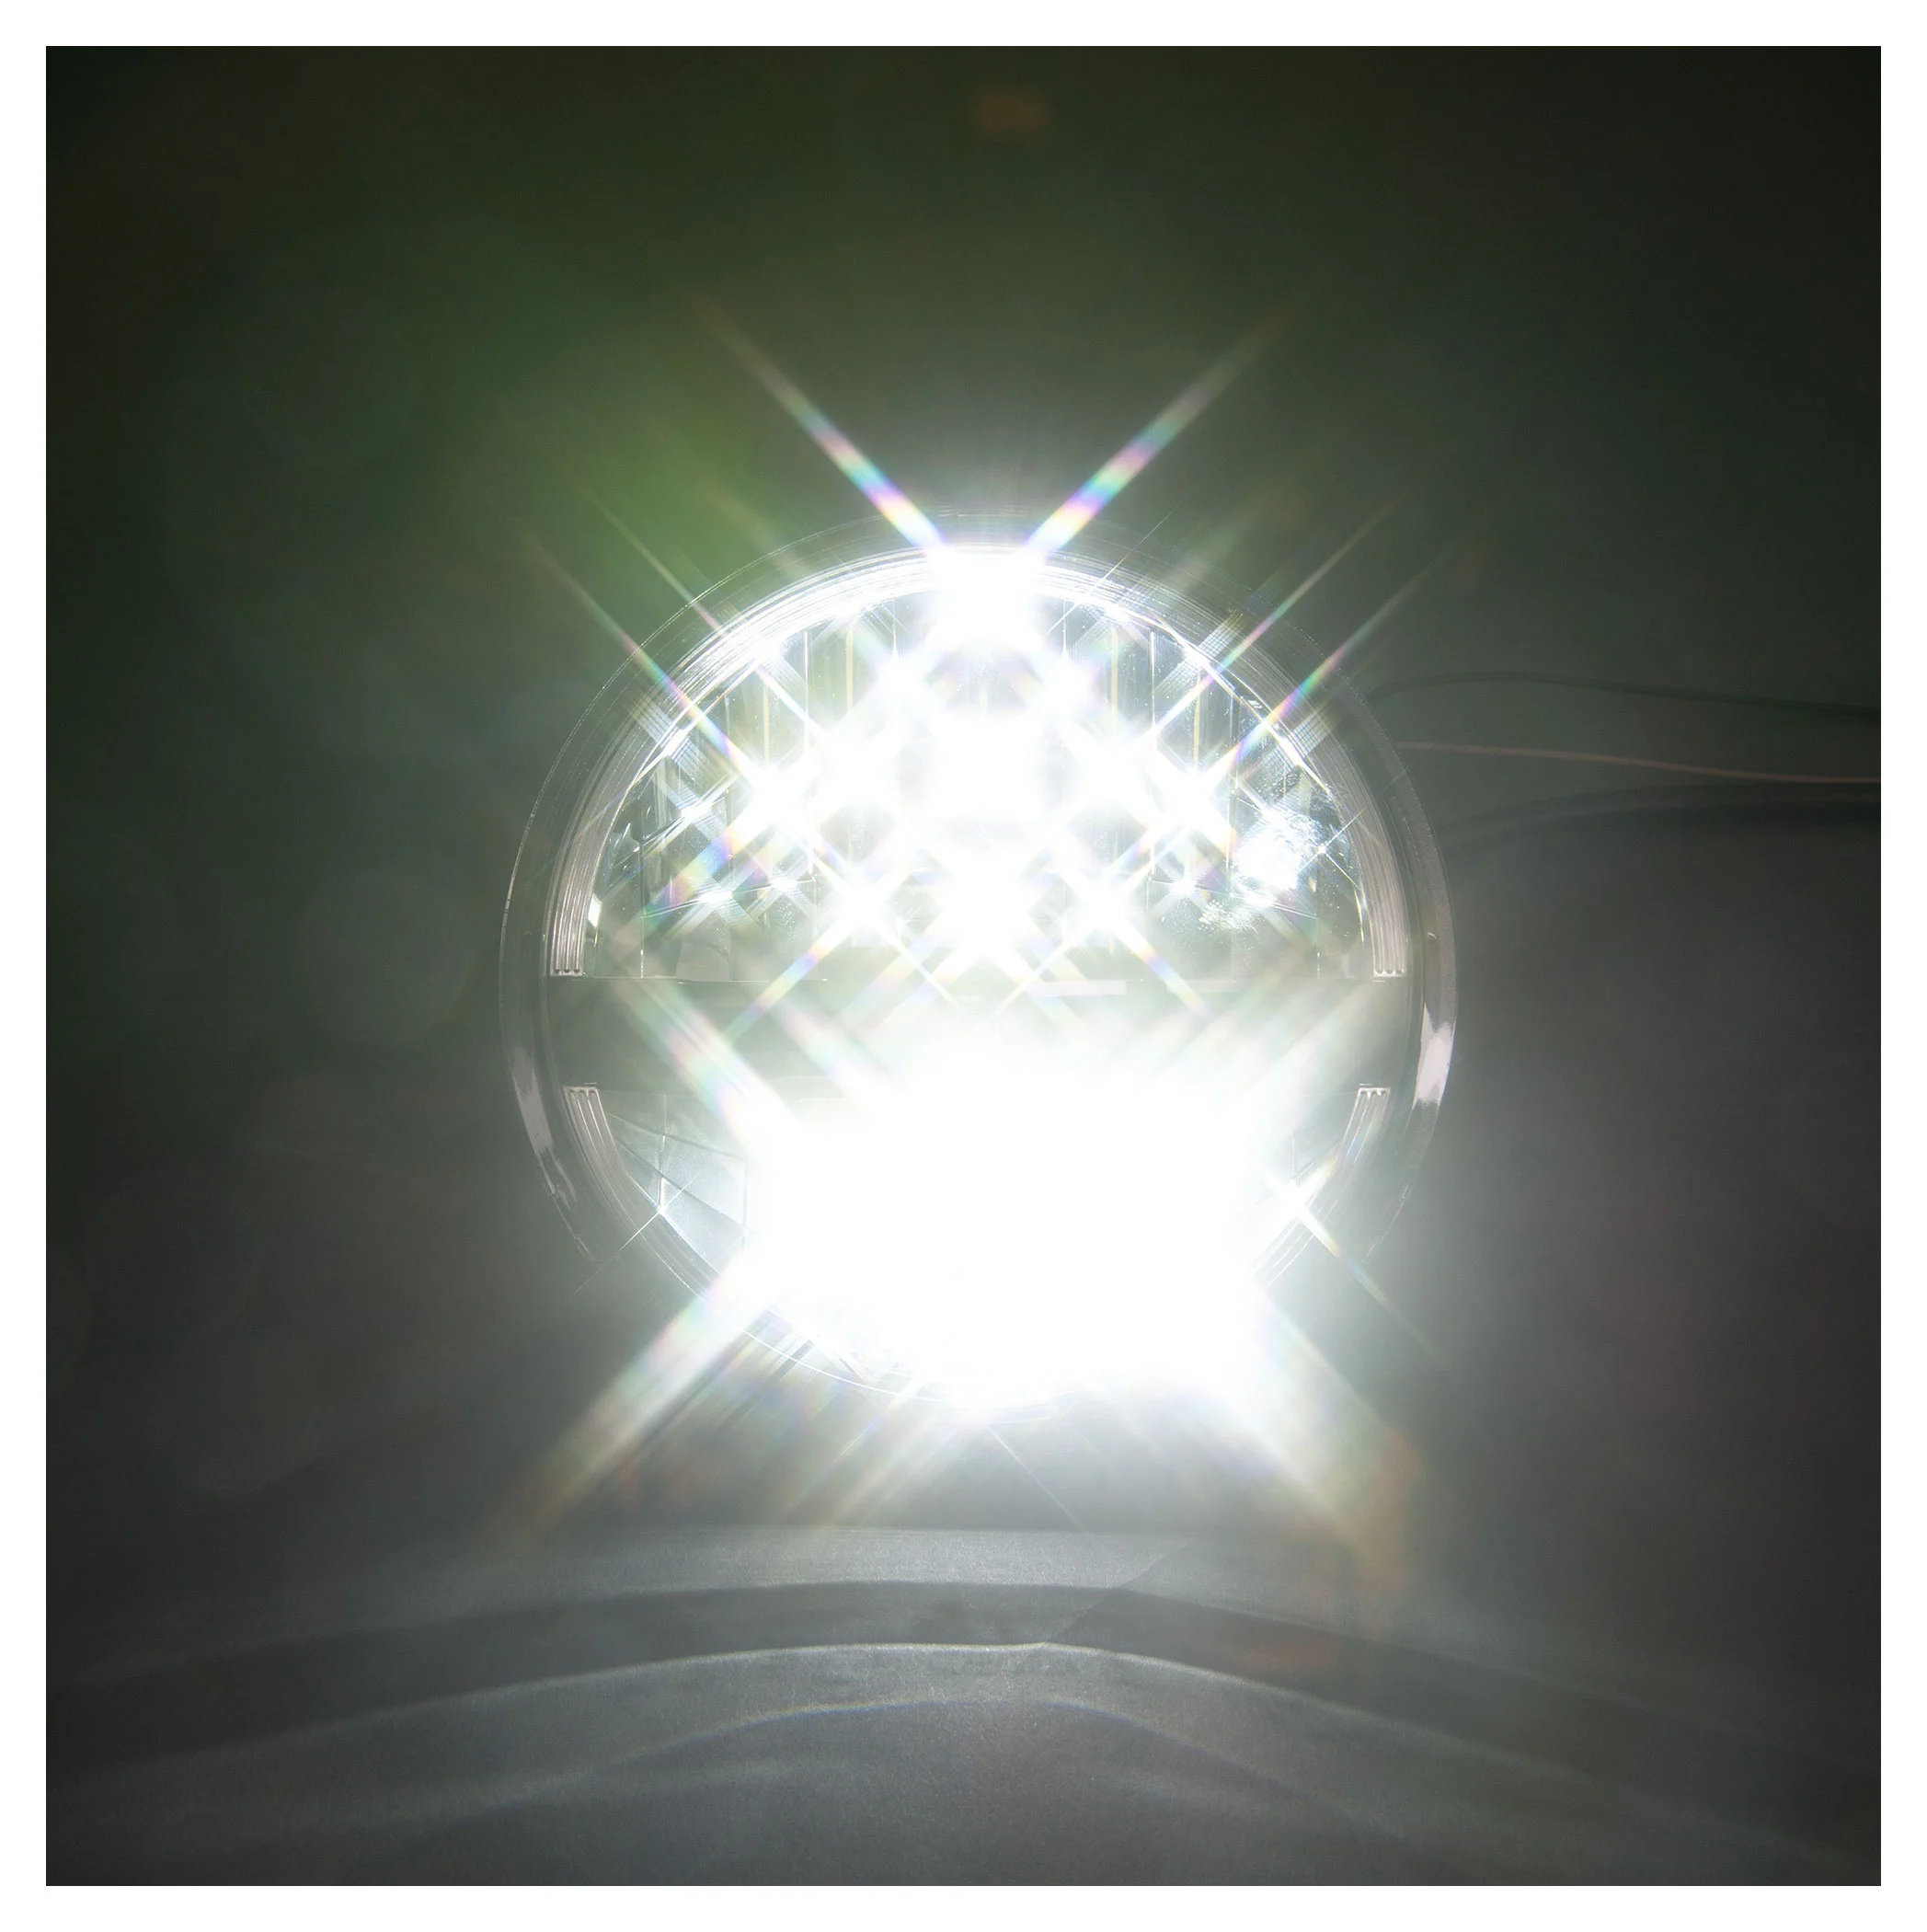 5 3/4 Zoll LED Scheinwerfer FRAME-R2 Typ 10, schwarz. Erhältlich mit  seitlicher und unterer Befestig, Hauptscheinwerfer, Beleuchtung, Produkte